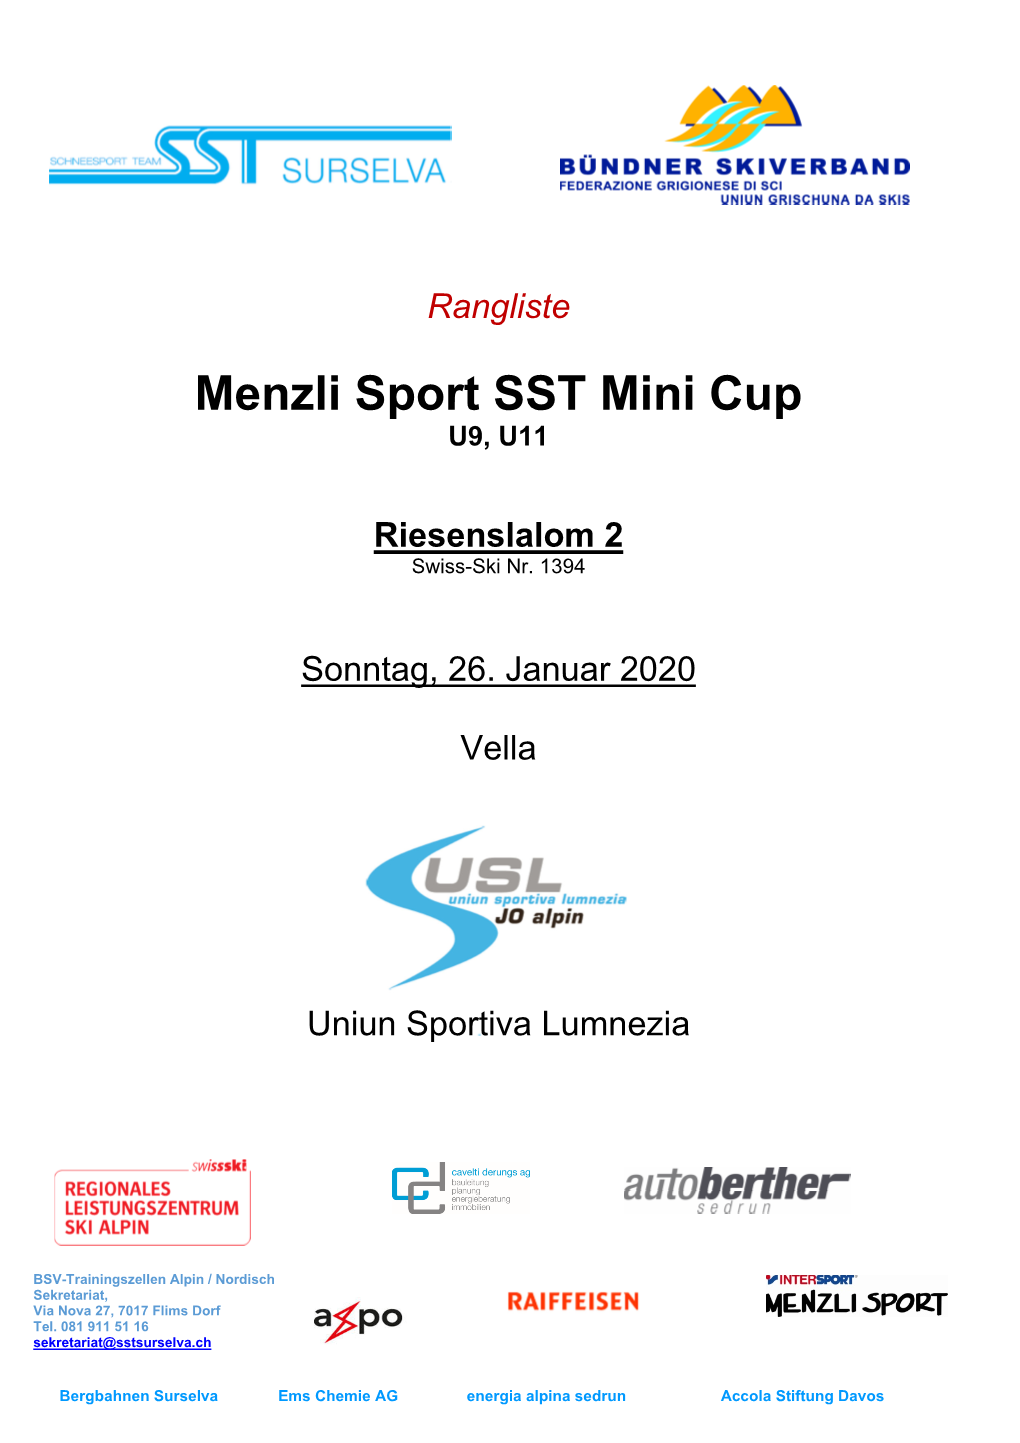 Menzli Sport SST Mini Cup U9, U11